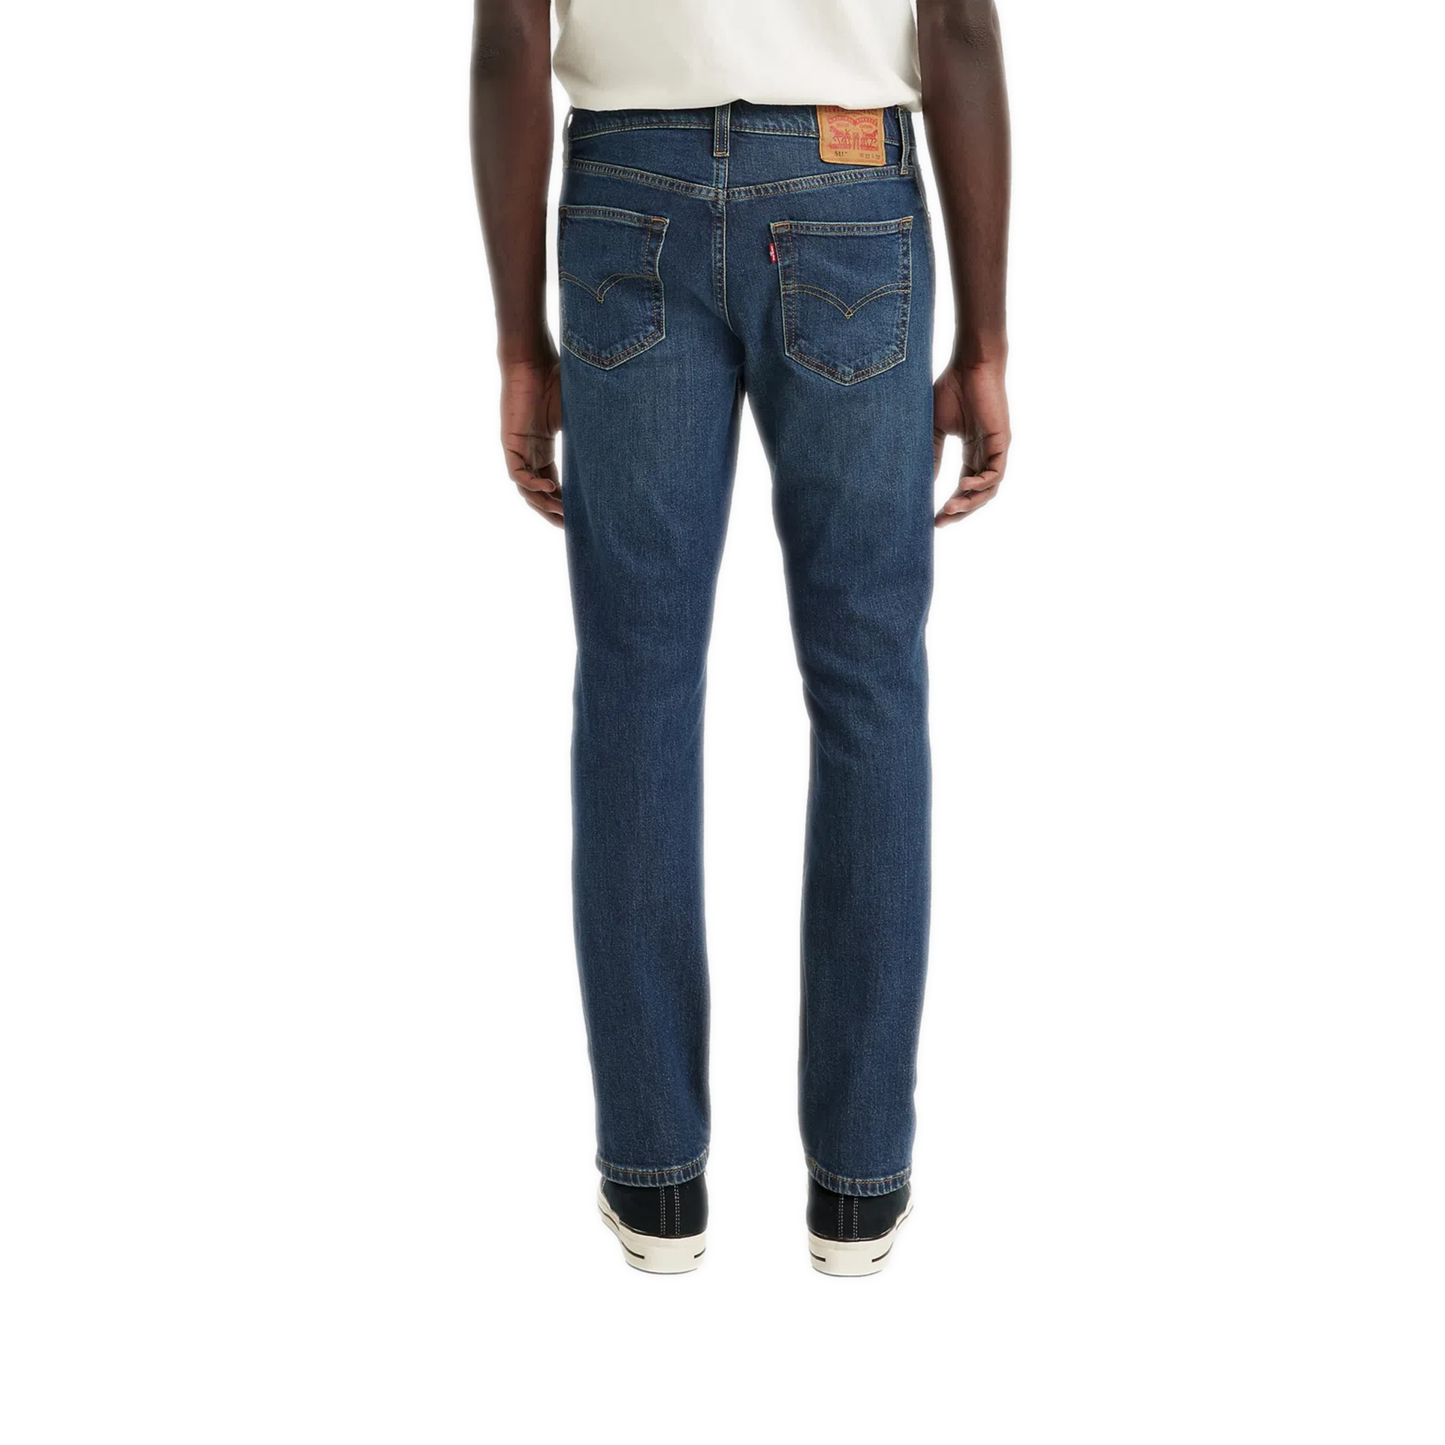 Men's Levi's 511 Slim Fit Jeans - A Figure It